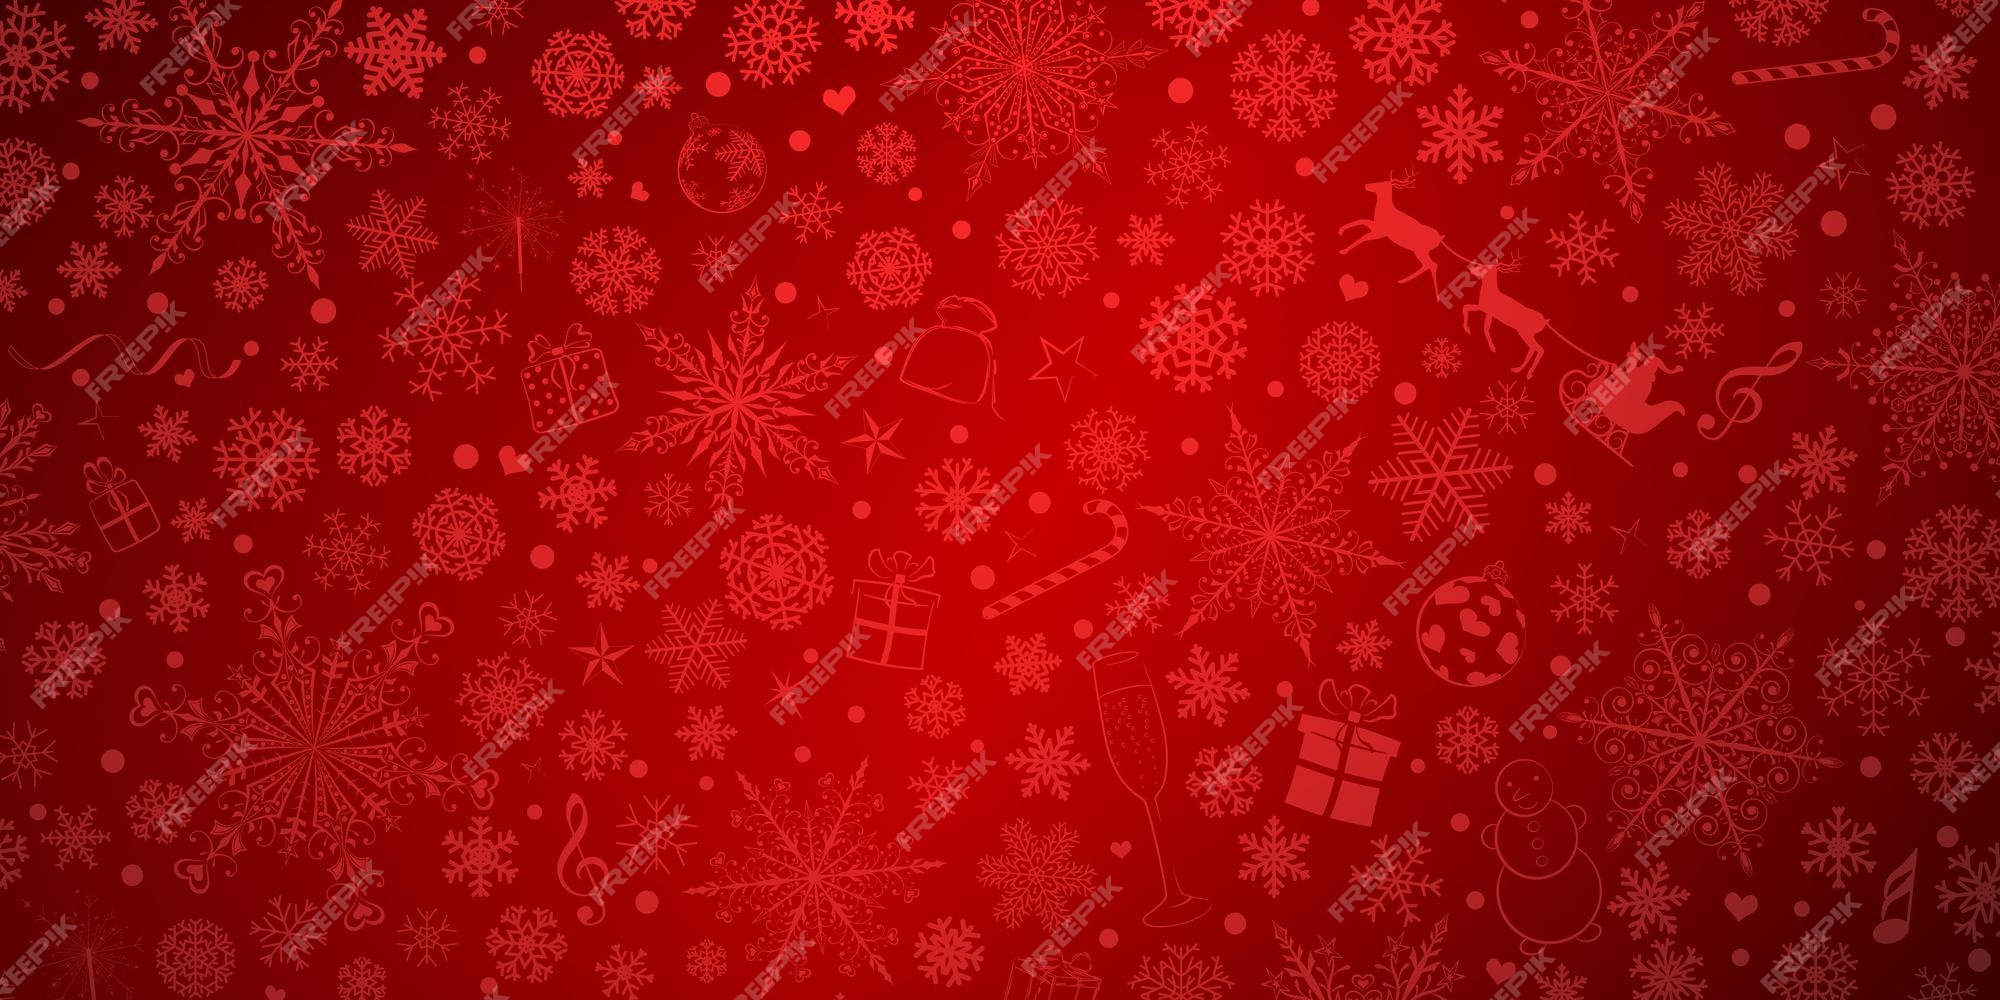 Hình nền Giáng Sinh đỏ là một lựa chọn hoàn hảo để làm mới và cập nhật trang web của bạn trong mùa lễ hội này. Tải miễn phí hình nền đẹp từ Freepik và thêm chúng vào trang web của bạn ngay bây giờ để tạo nên một không gian đầy ấn tượng và lạ mắt.